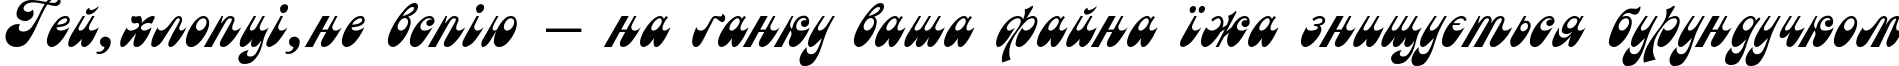 Пример написания шрифтом Astra текста на украинском